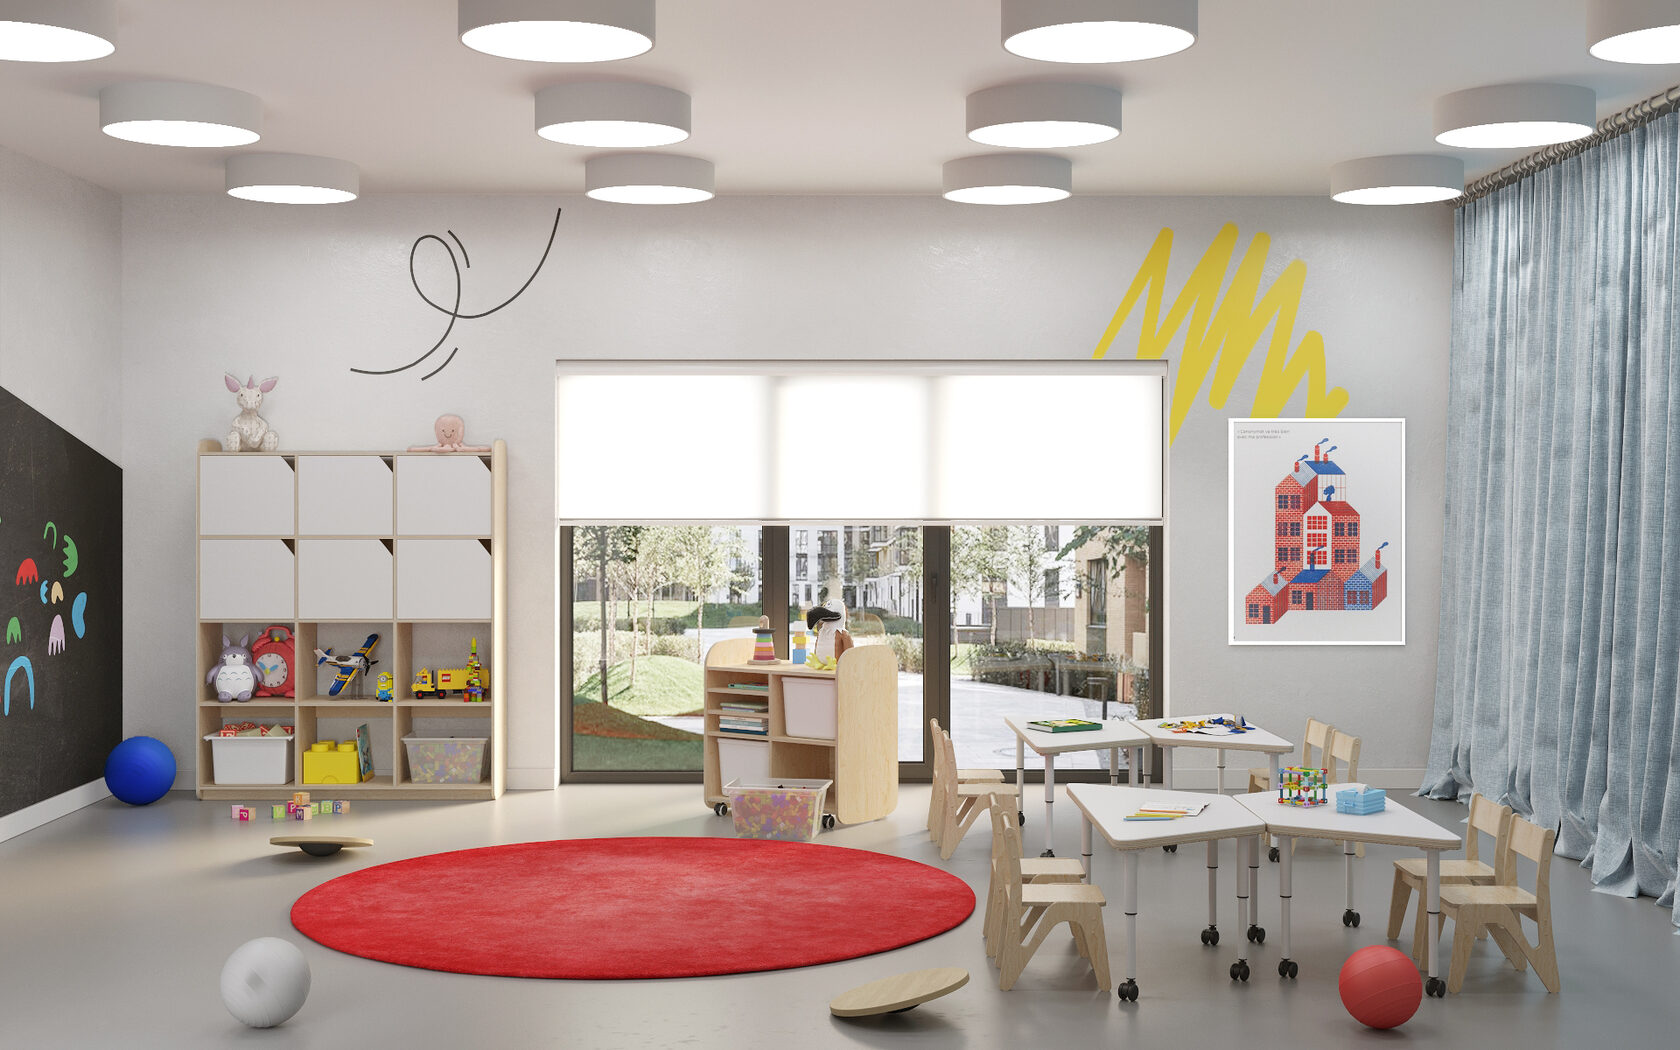 Дизайн интерьера детской комнаты | Фото проектов